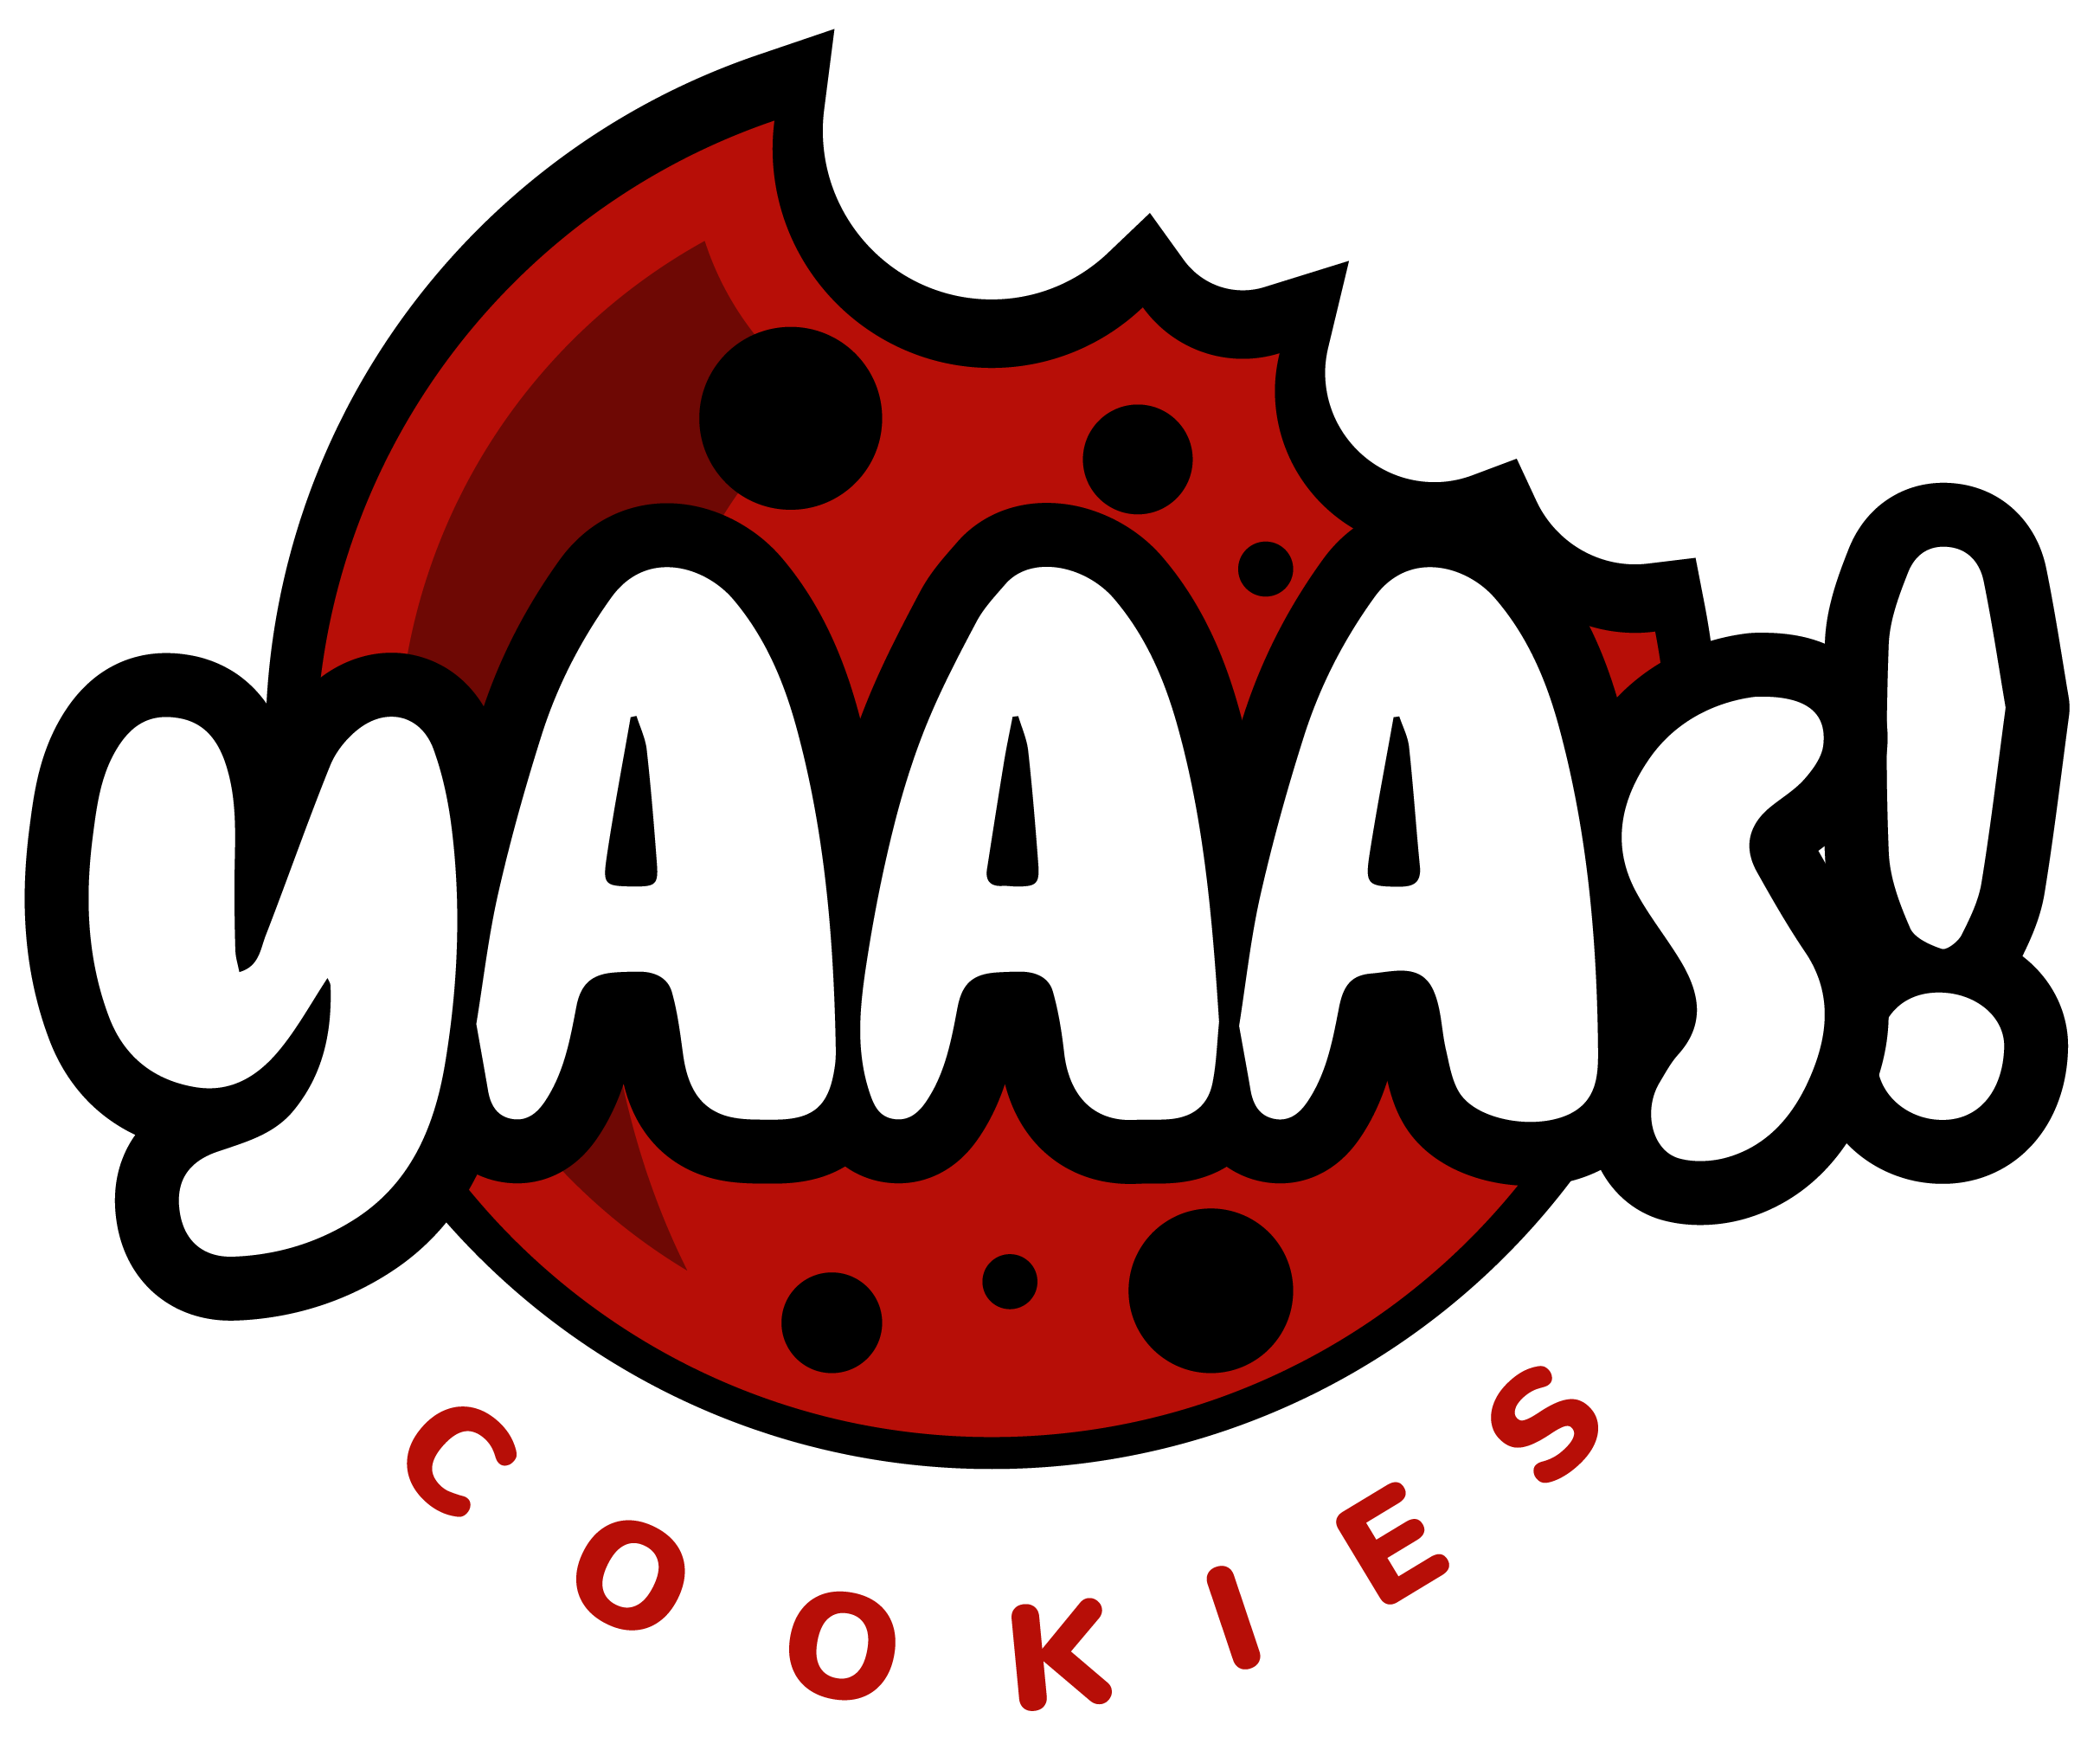 yAAAs! Cookies